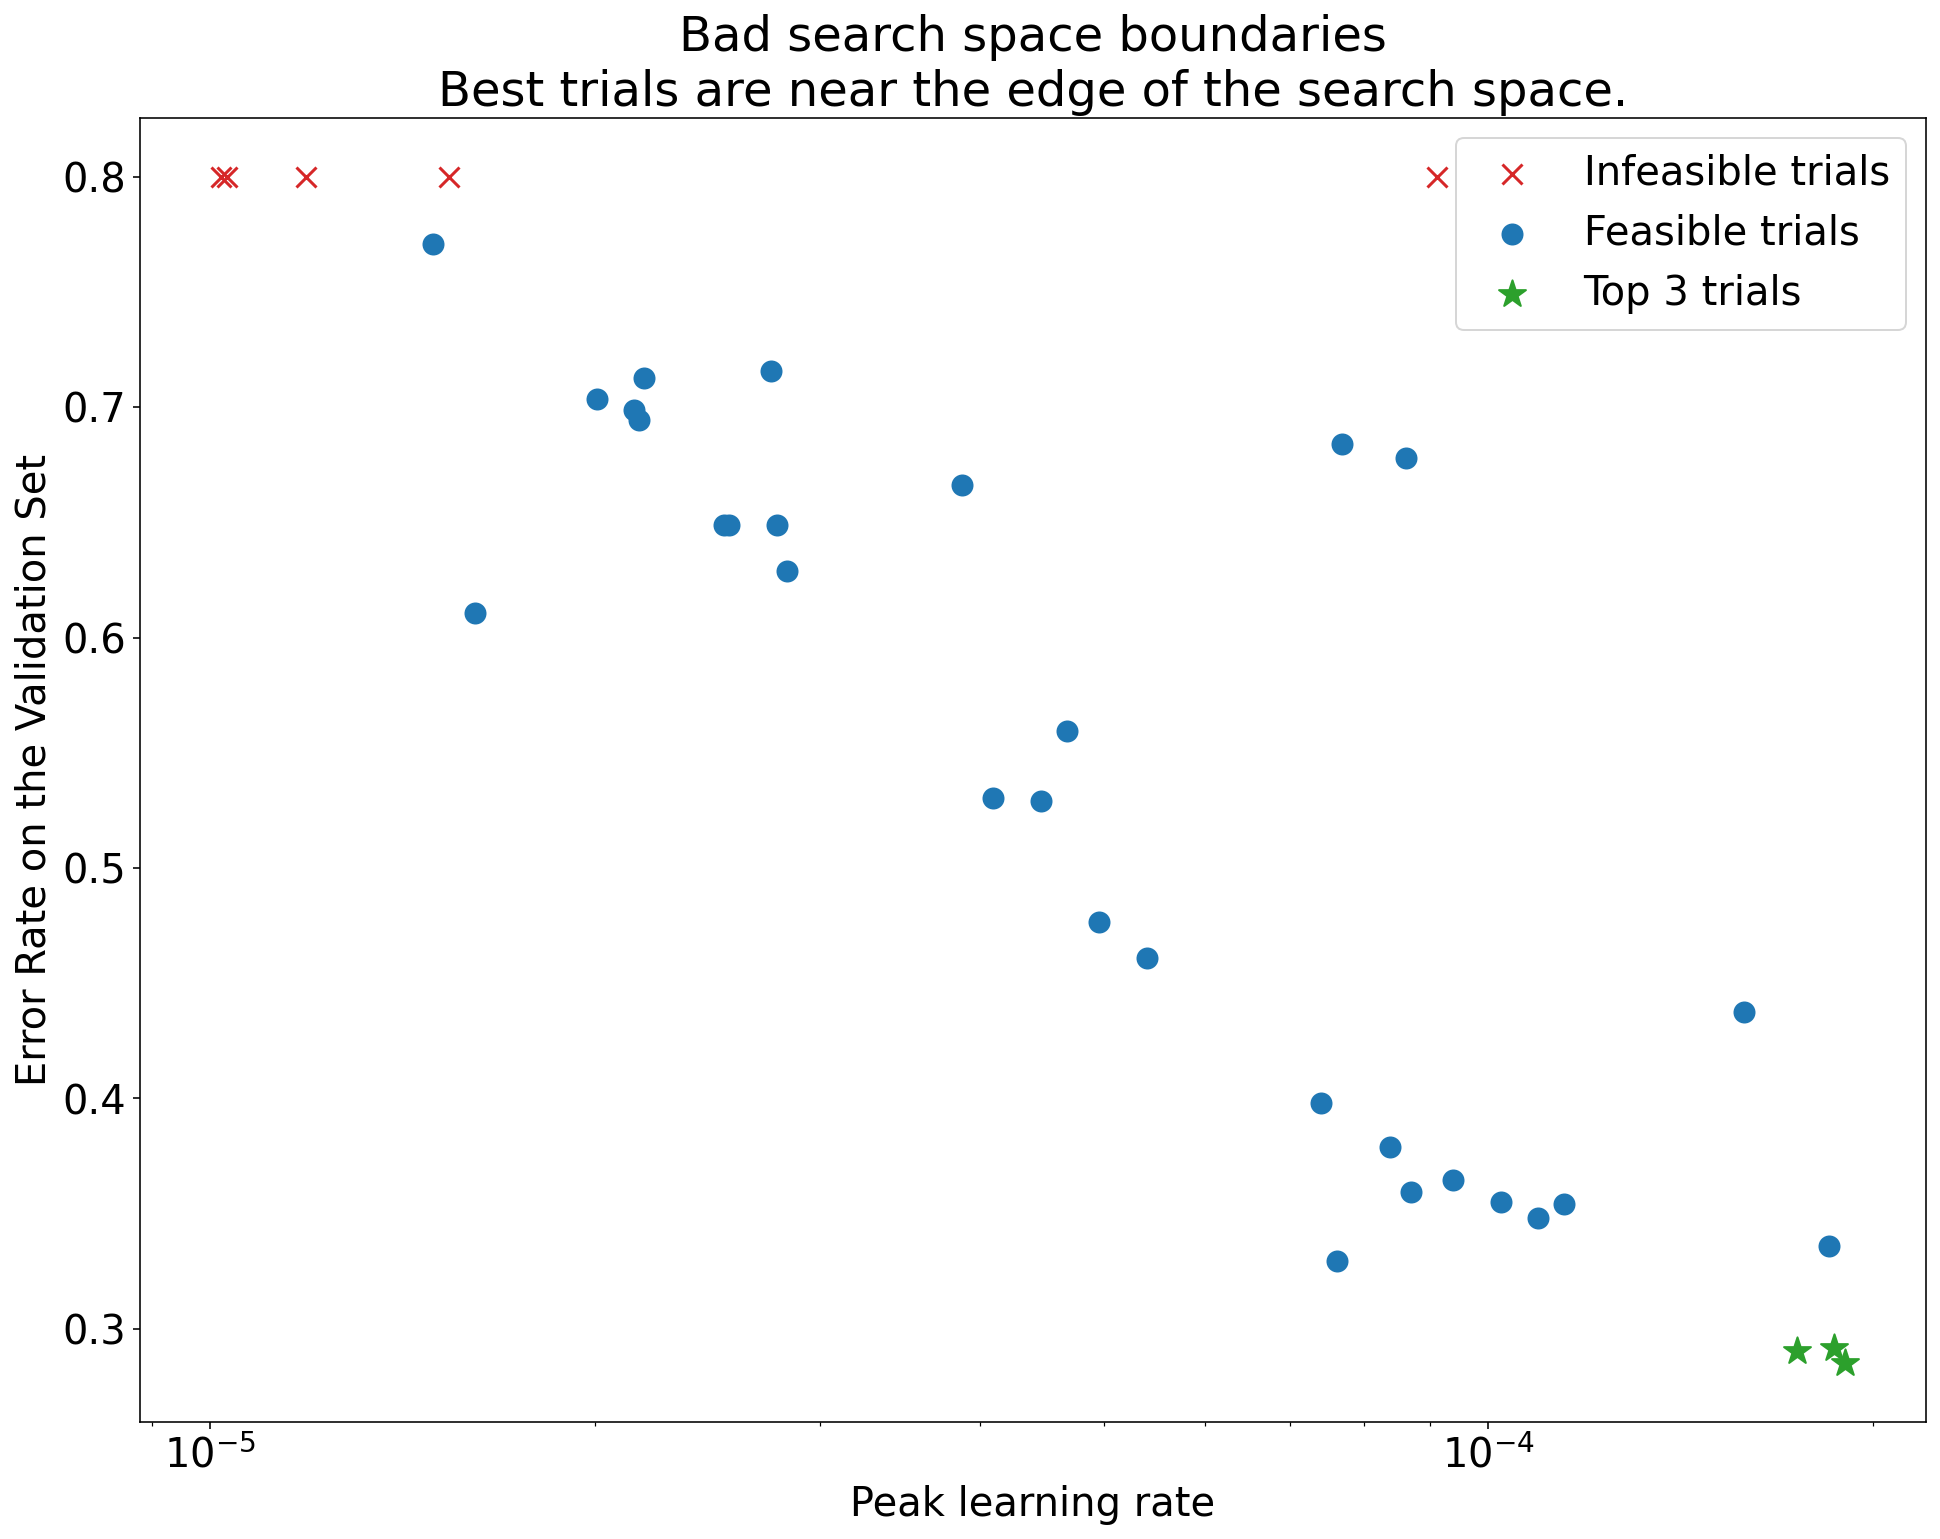 Gráfico del porcentaje de errores en el conjunto de validación (eje y) comparado con la tasa de aprendizaje máxima (eje x) que demuestra límites de espacio de búsqueda deficiente. En este gráfico, las mejores pruebas (las tasas de error más bajas) se encuentran cerca del límite del espacio de búsqueda, donde la tasa de aprendizaje máxima es la más alta.